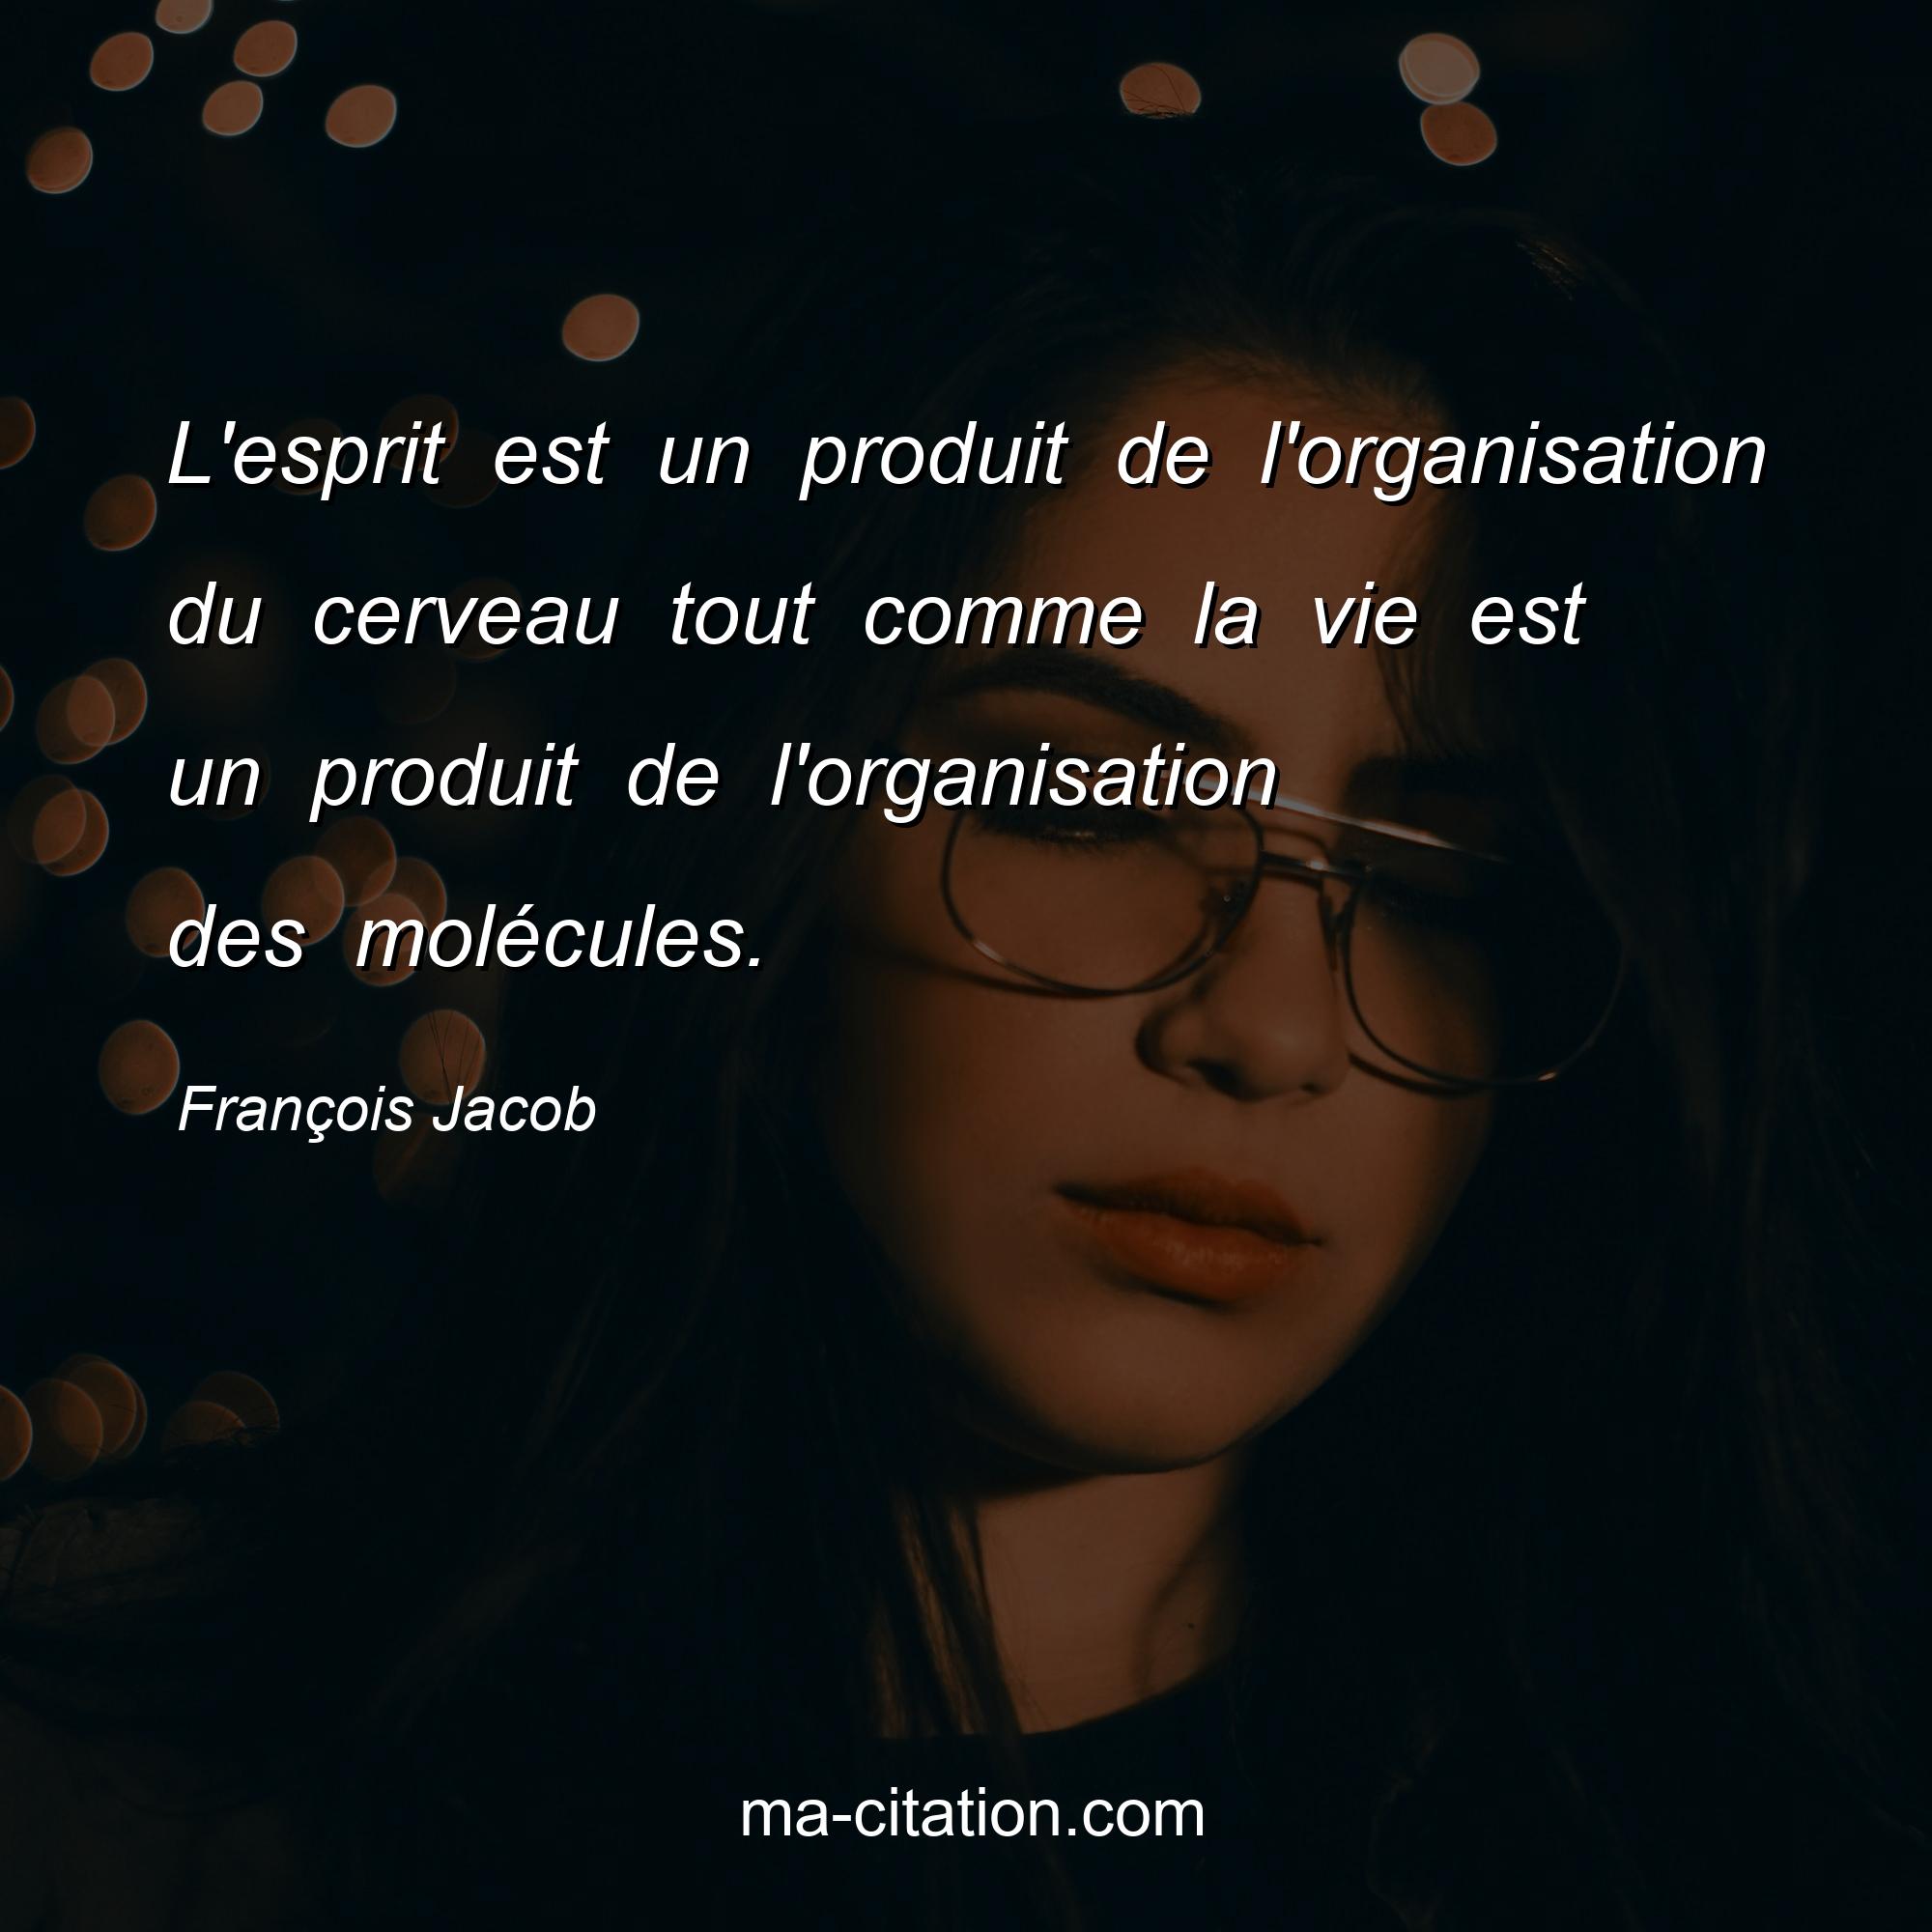 François Jacob : L'esprit est un produit de l'organisation du cerveau tout comme la vie est un produit de l'organisation des molécules.